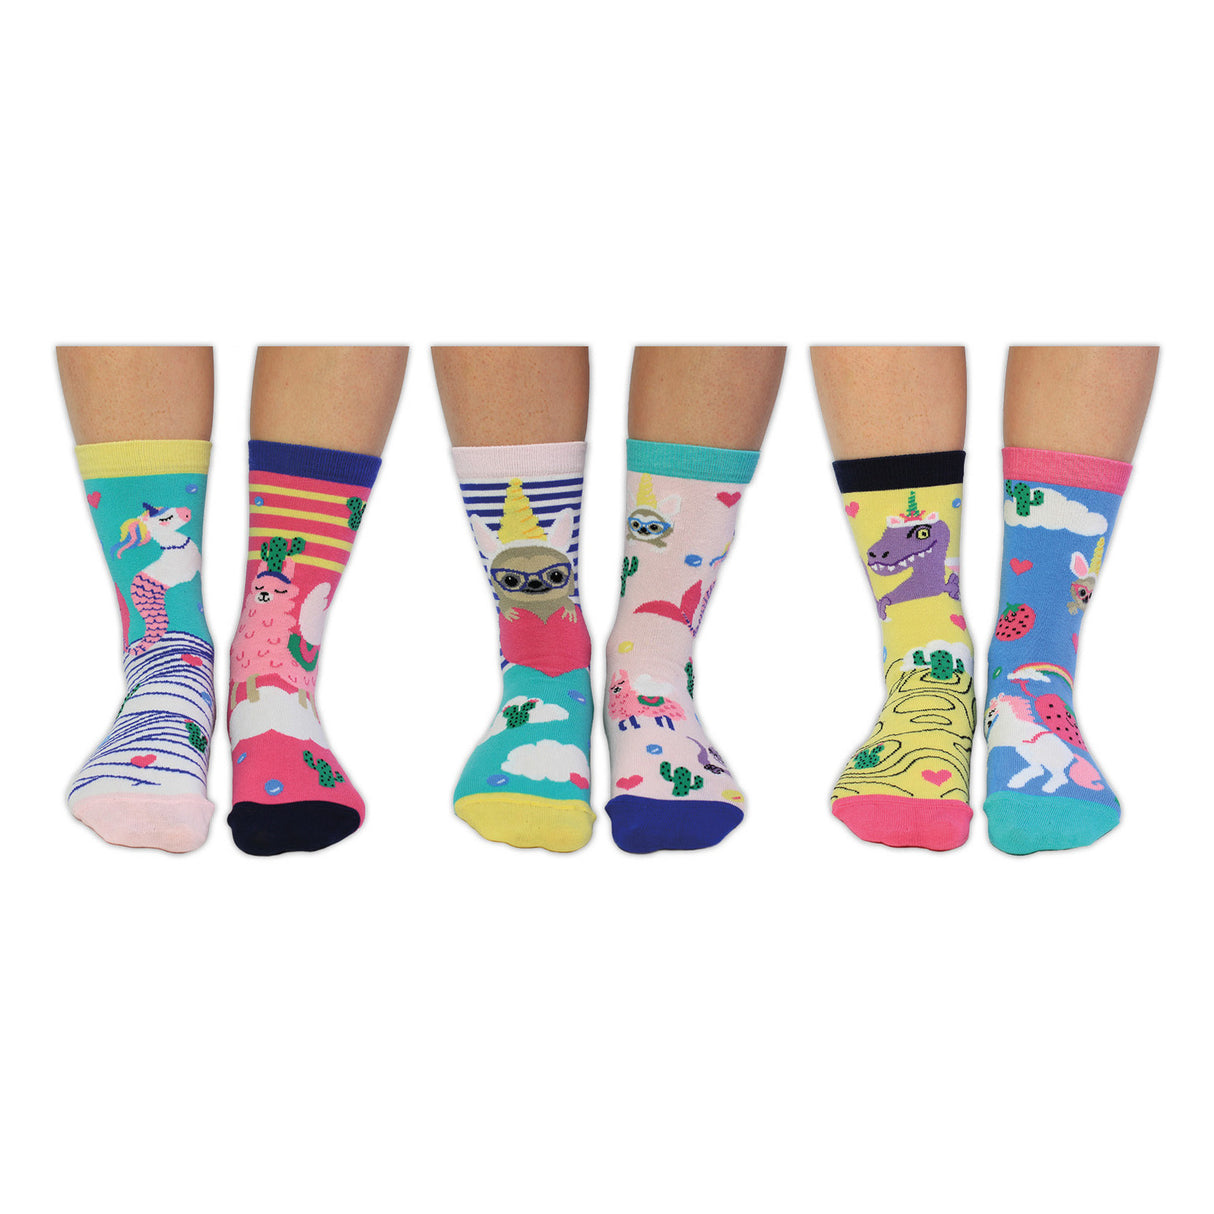 Einhorn vs. Lama Oddsocks Socken Set: 6er Geschenkset - Jetzt kaufen! –